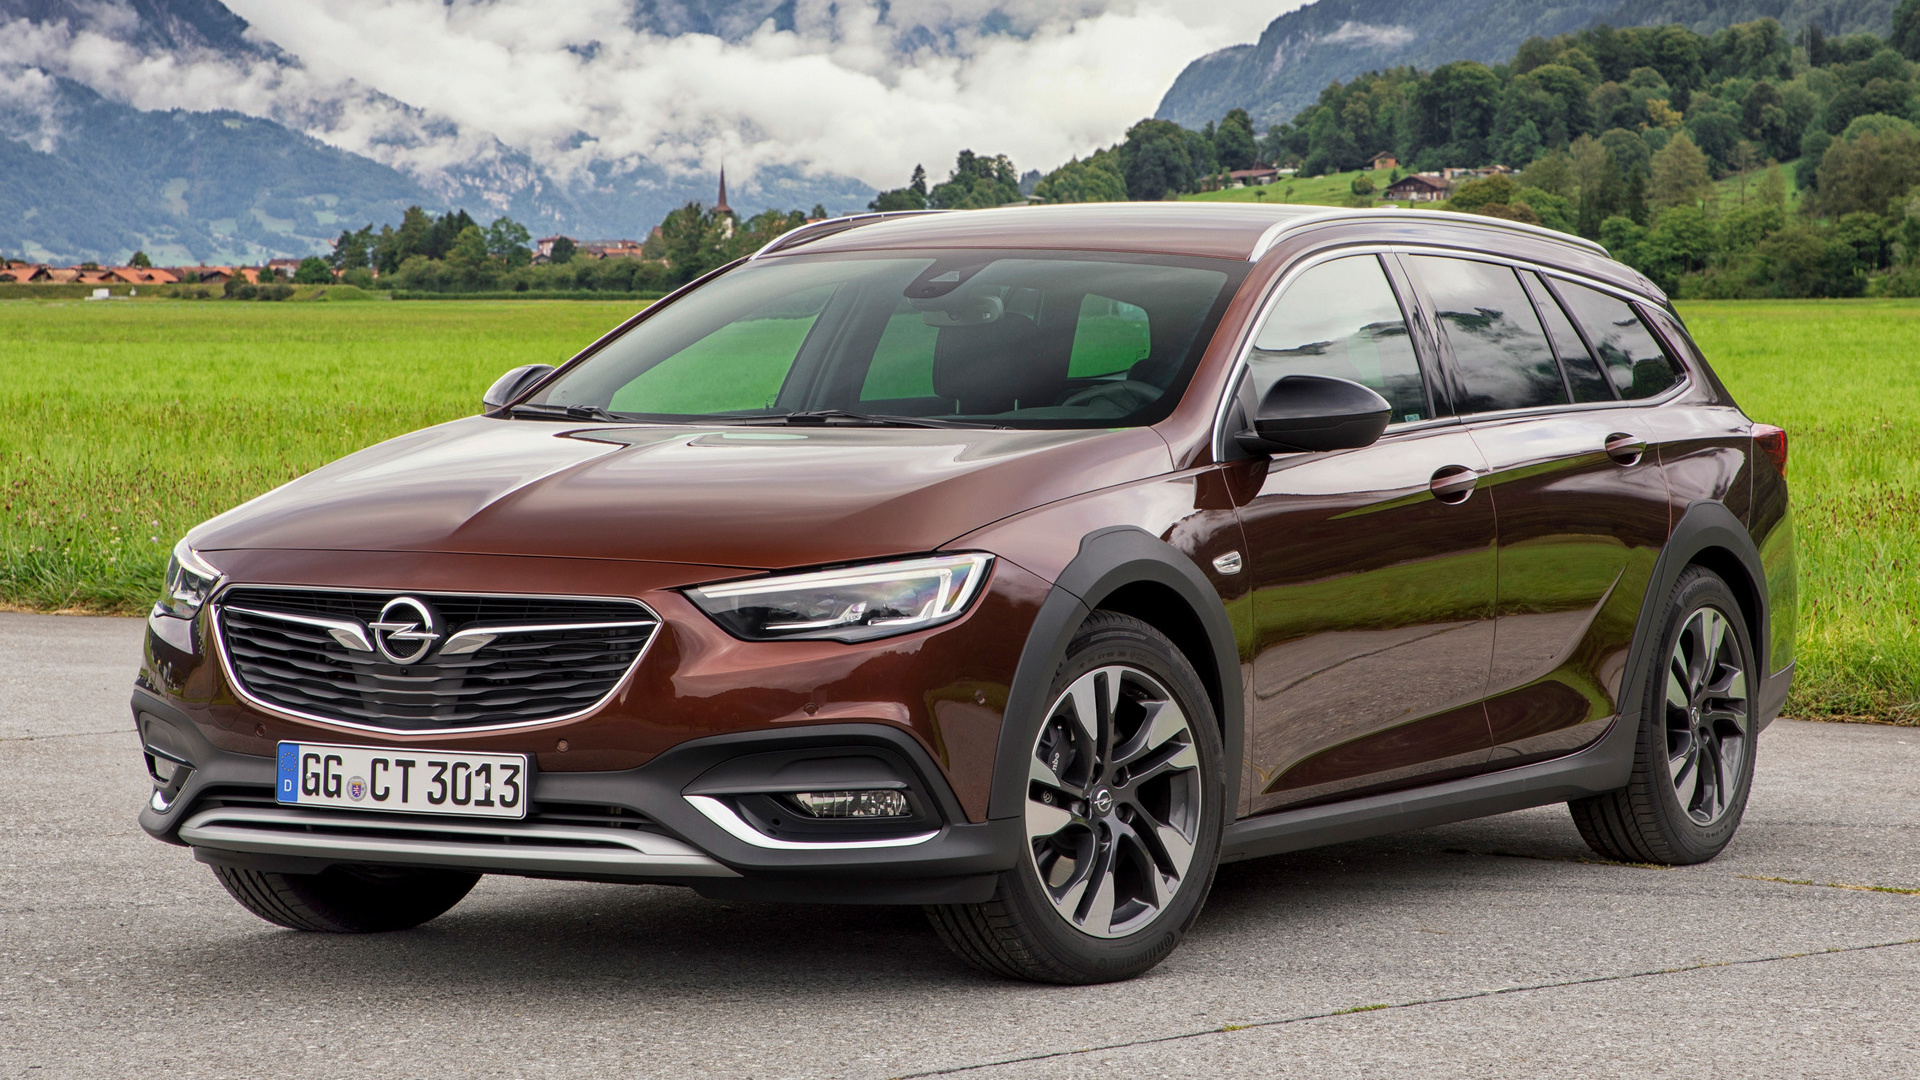 Descargar fondos de escritorio de Opel Insignia Exclusivo Country Tourer HD